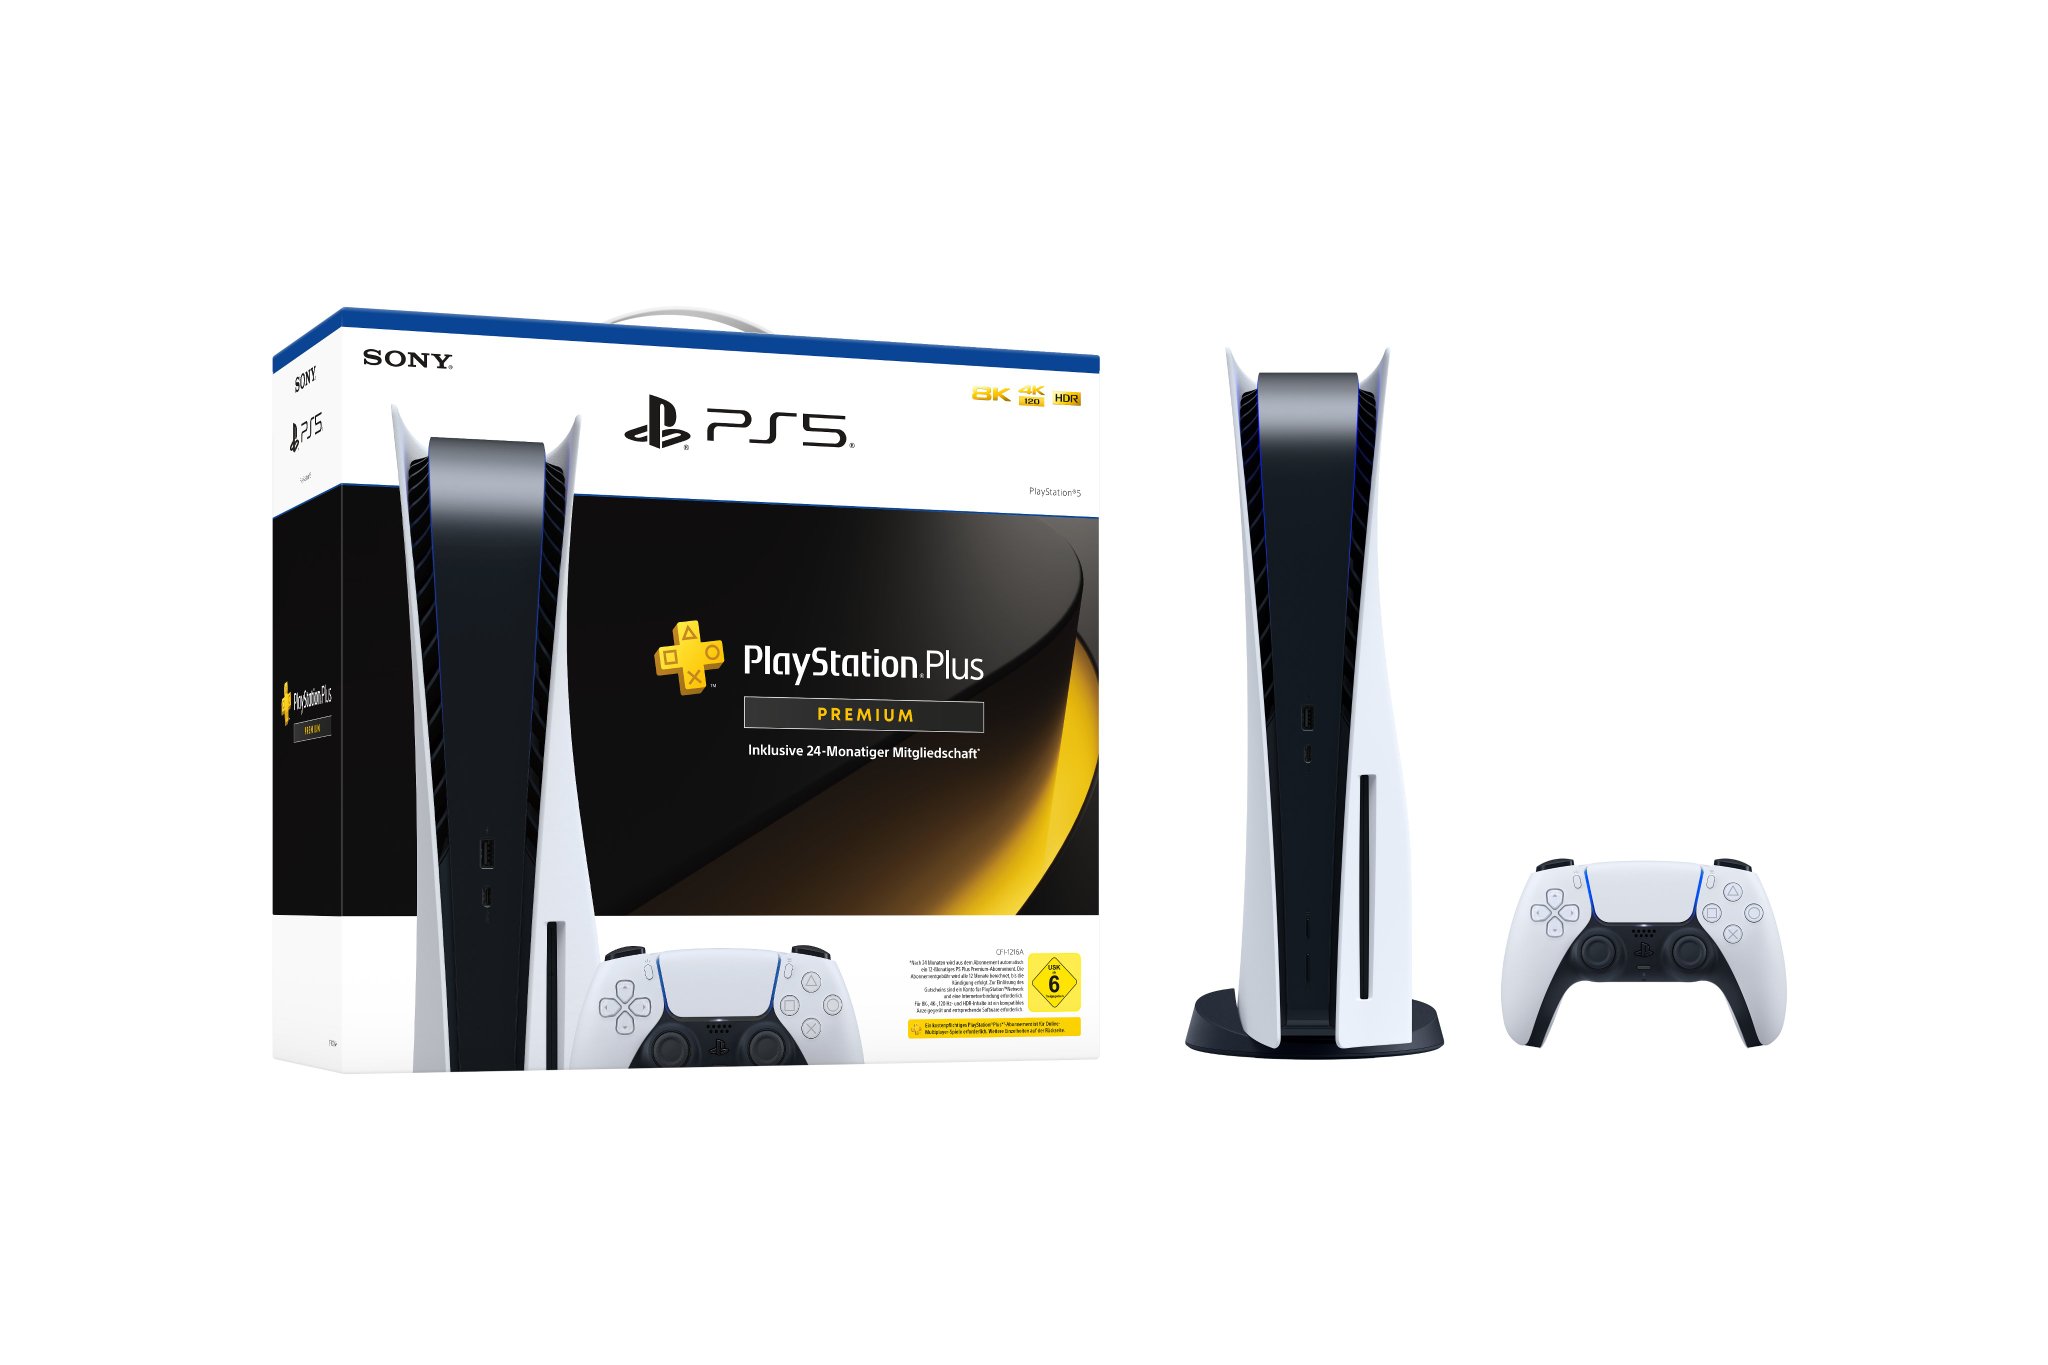 Sony oferece 1 mês de assinatura da PS Plus por R$ 5